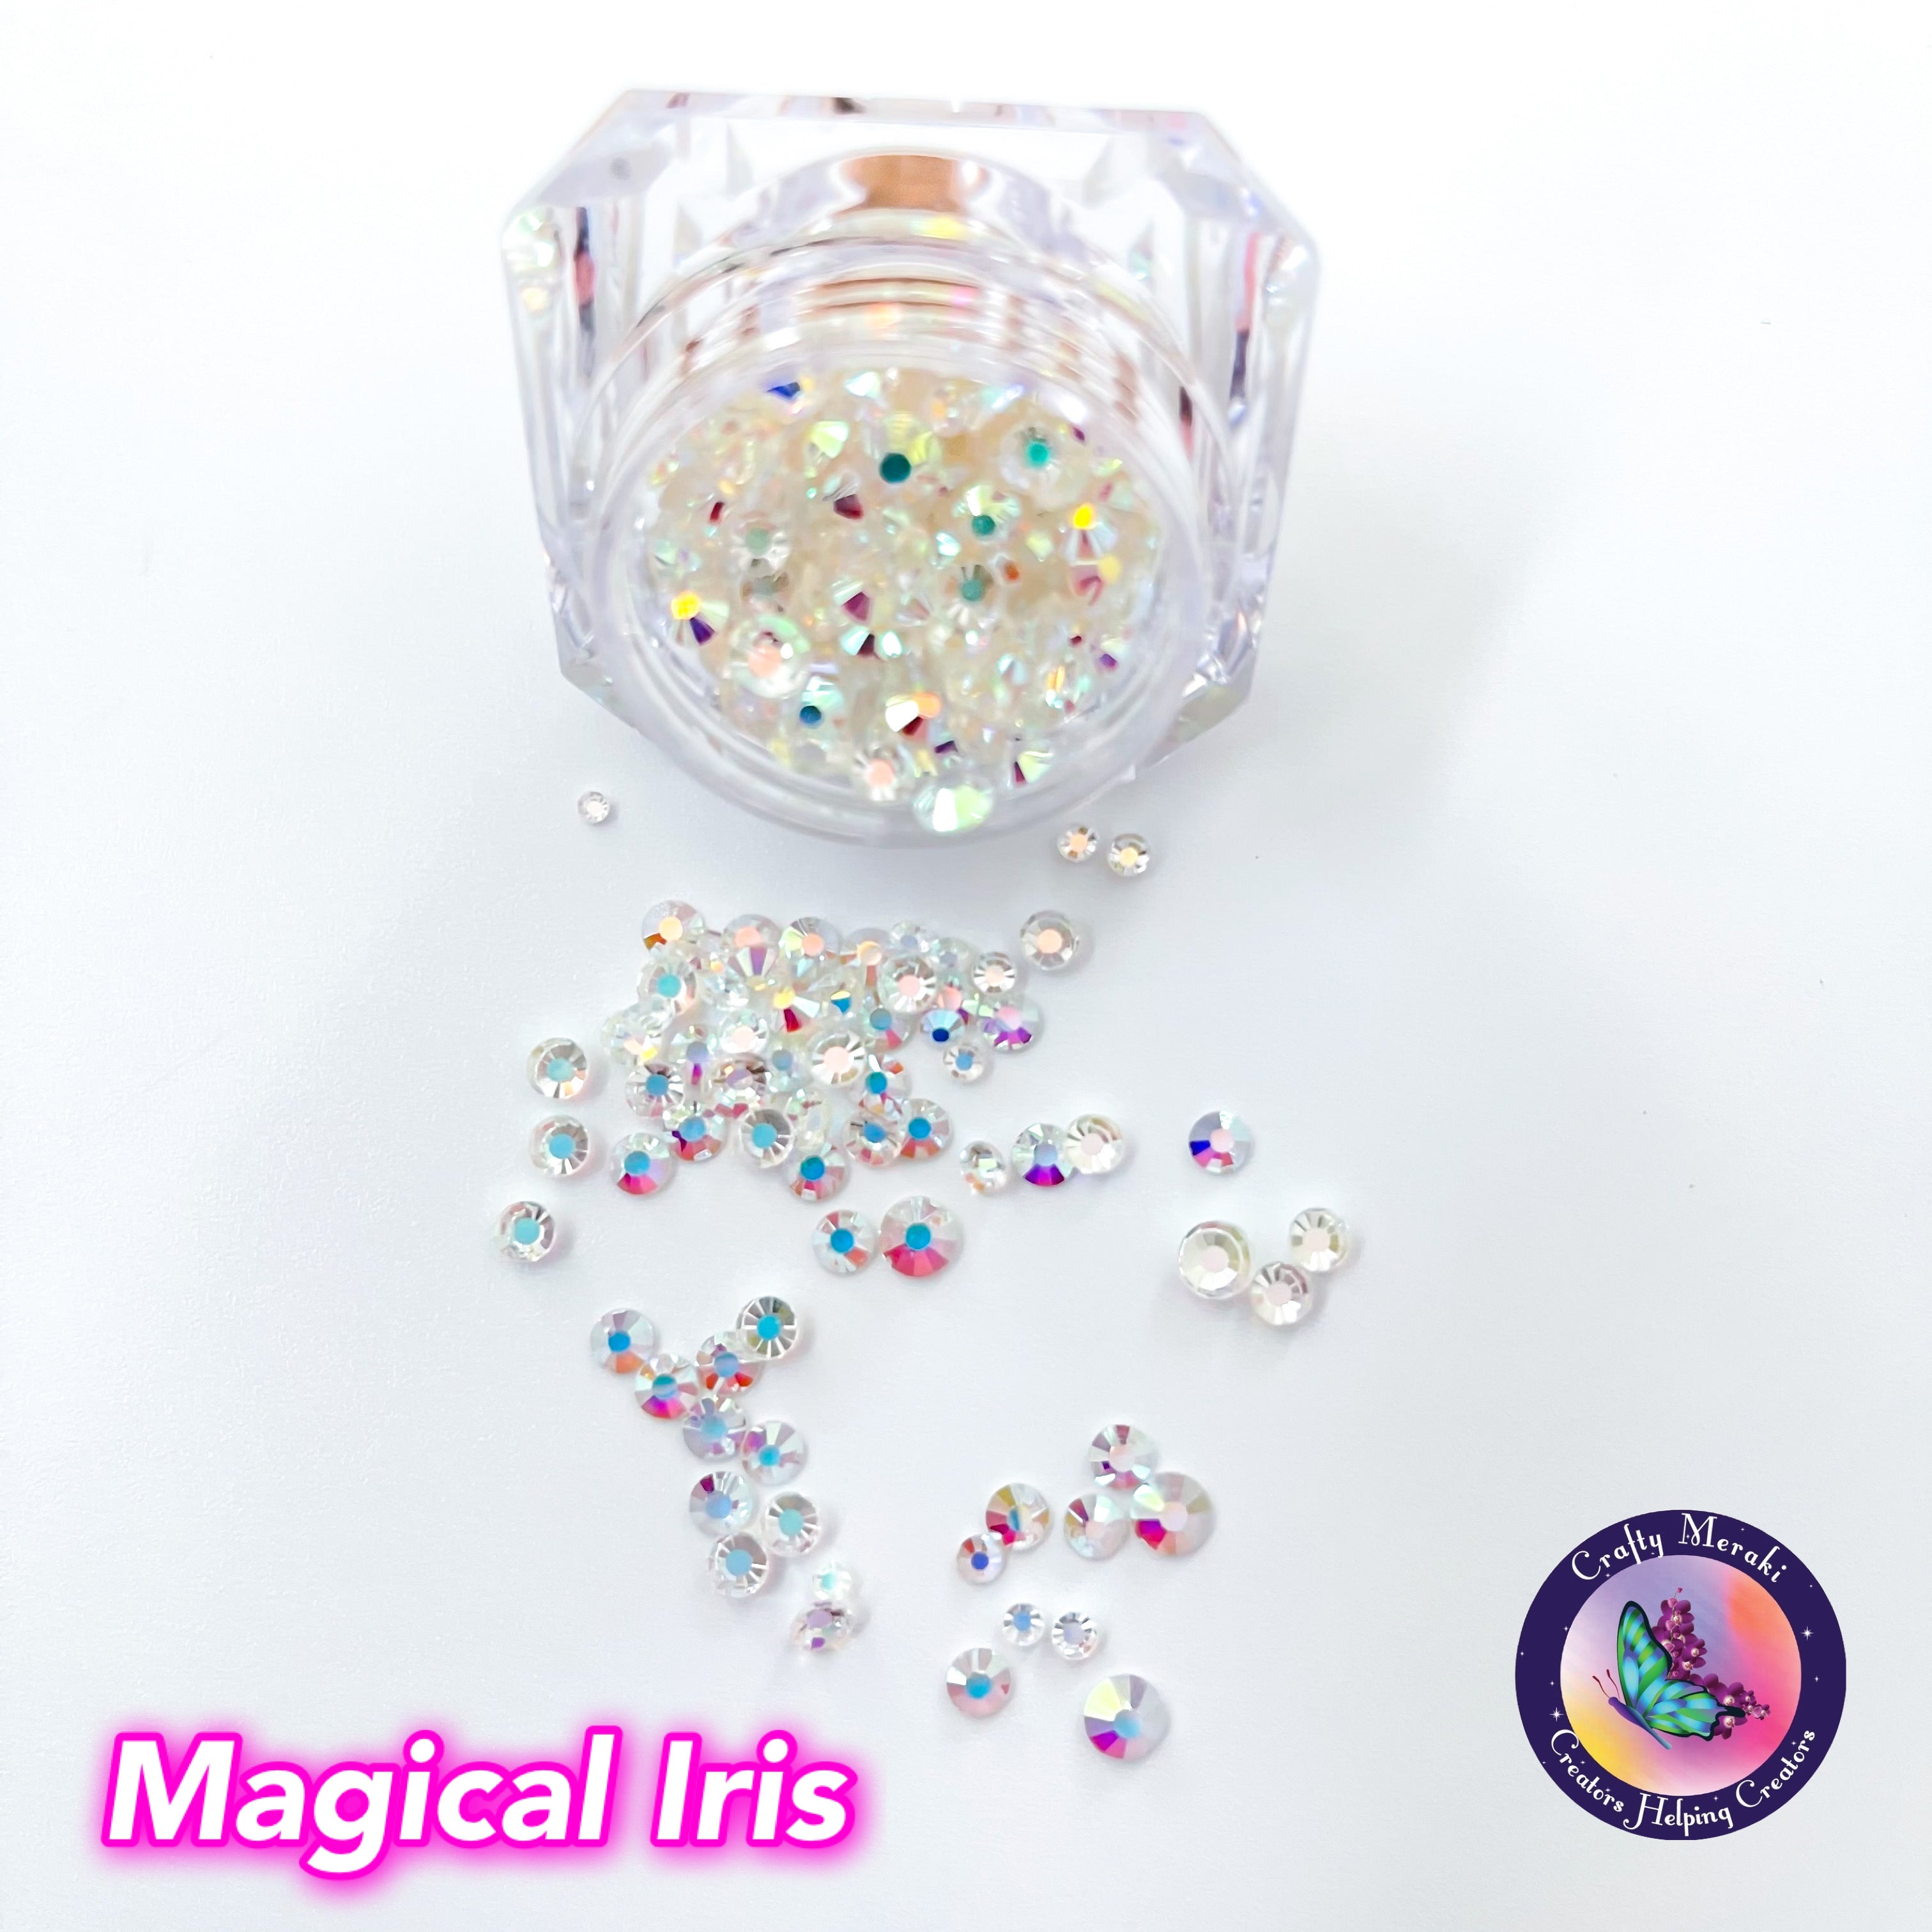 Meraki Sparkle Magical Iris - Crafty Meraki